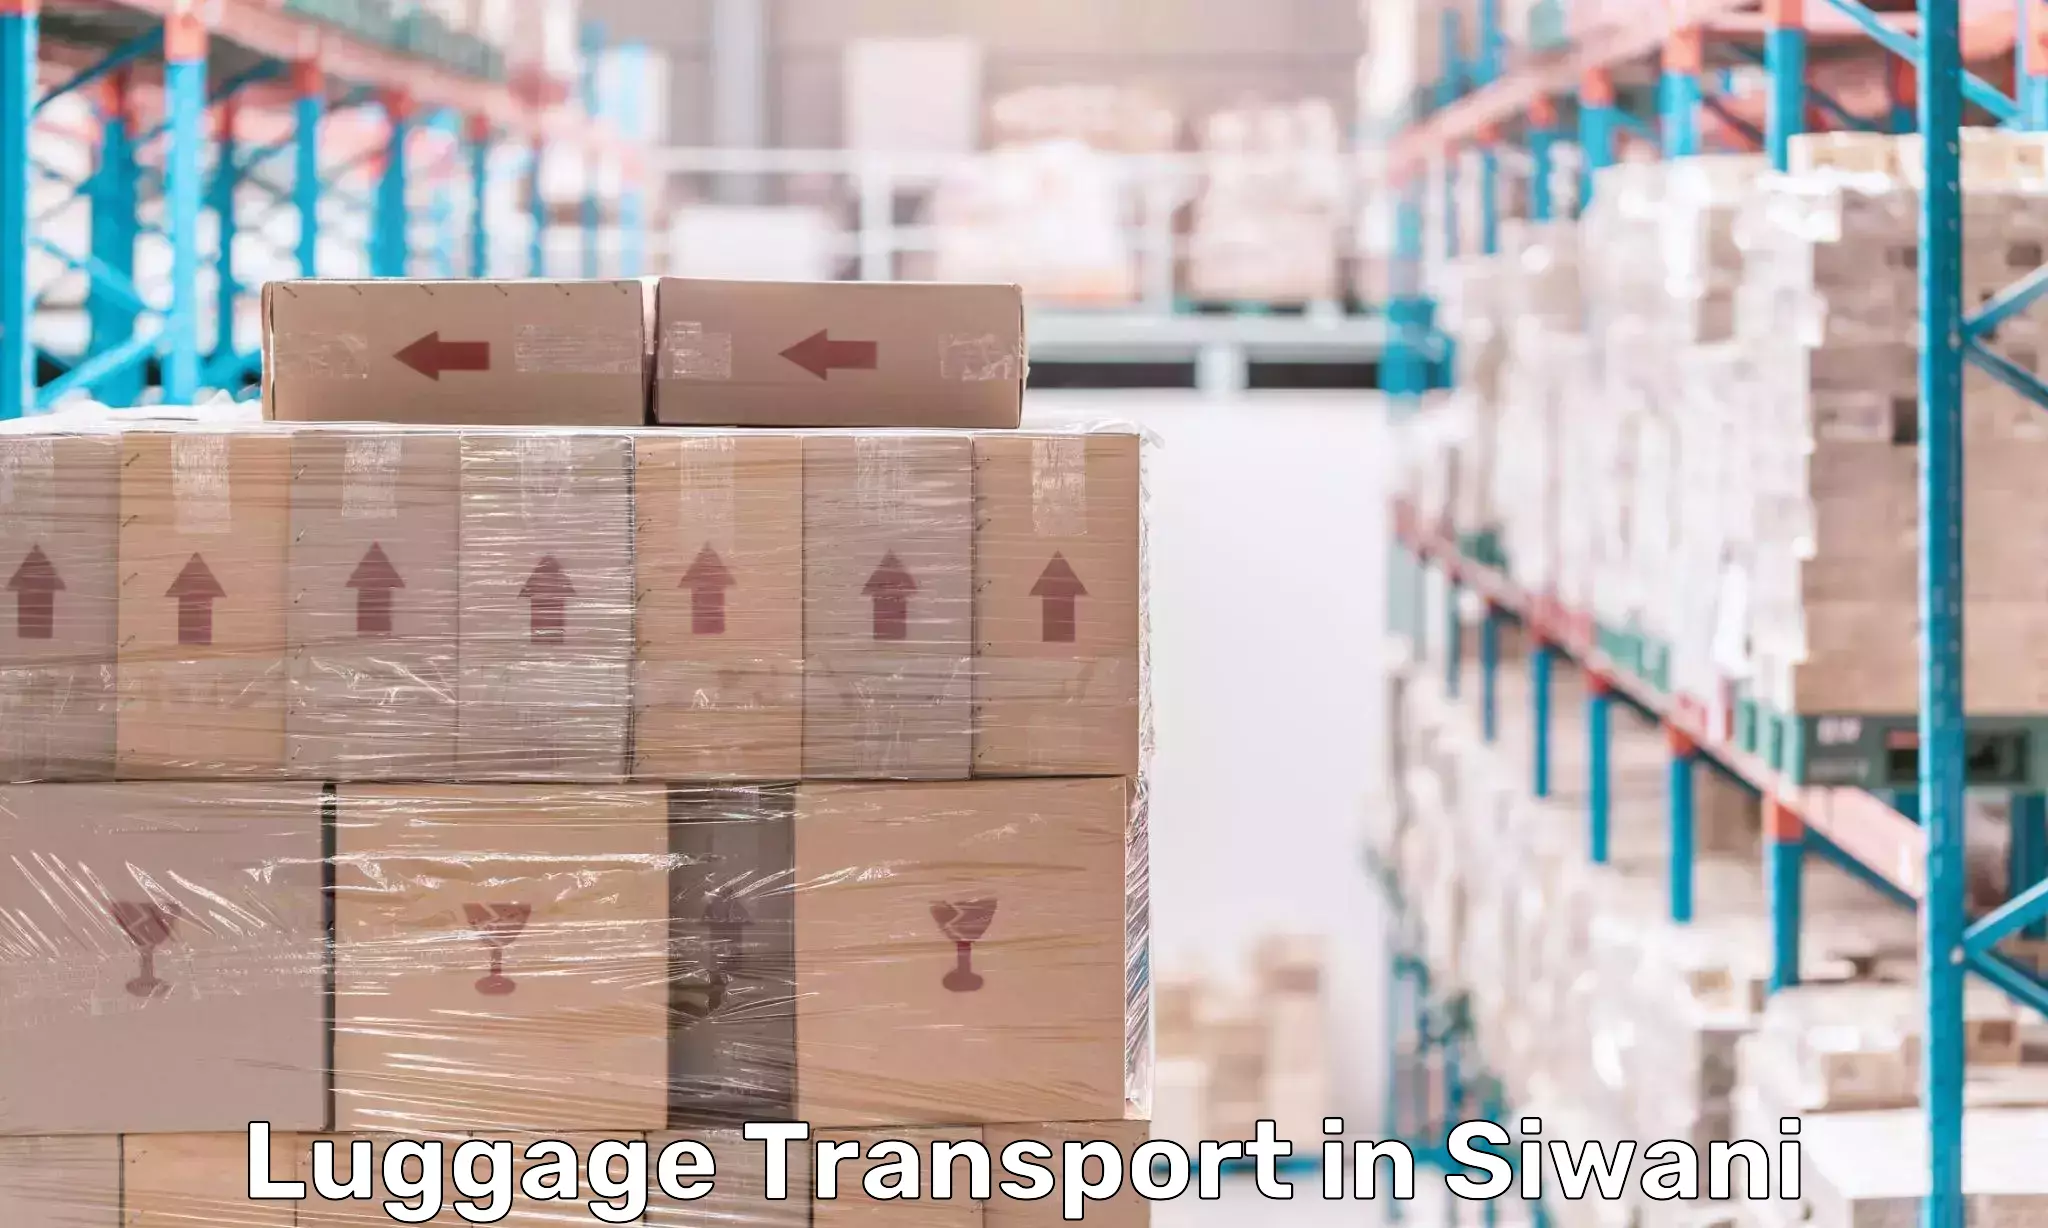 Luggage shipment tracking in Siwani